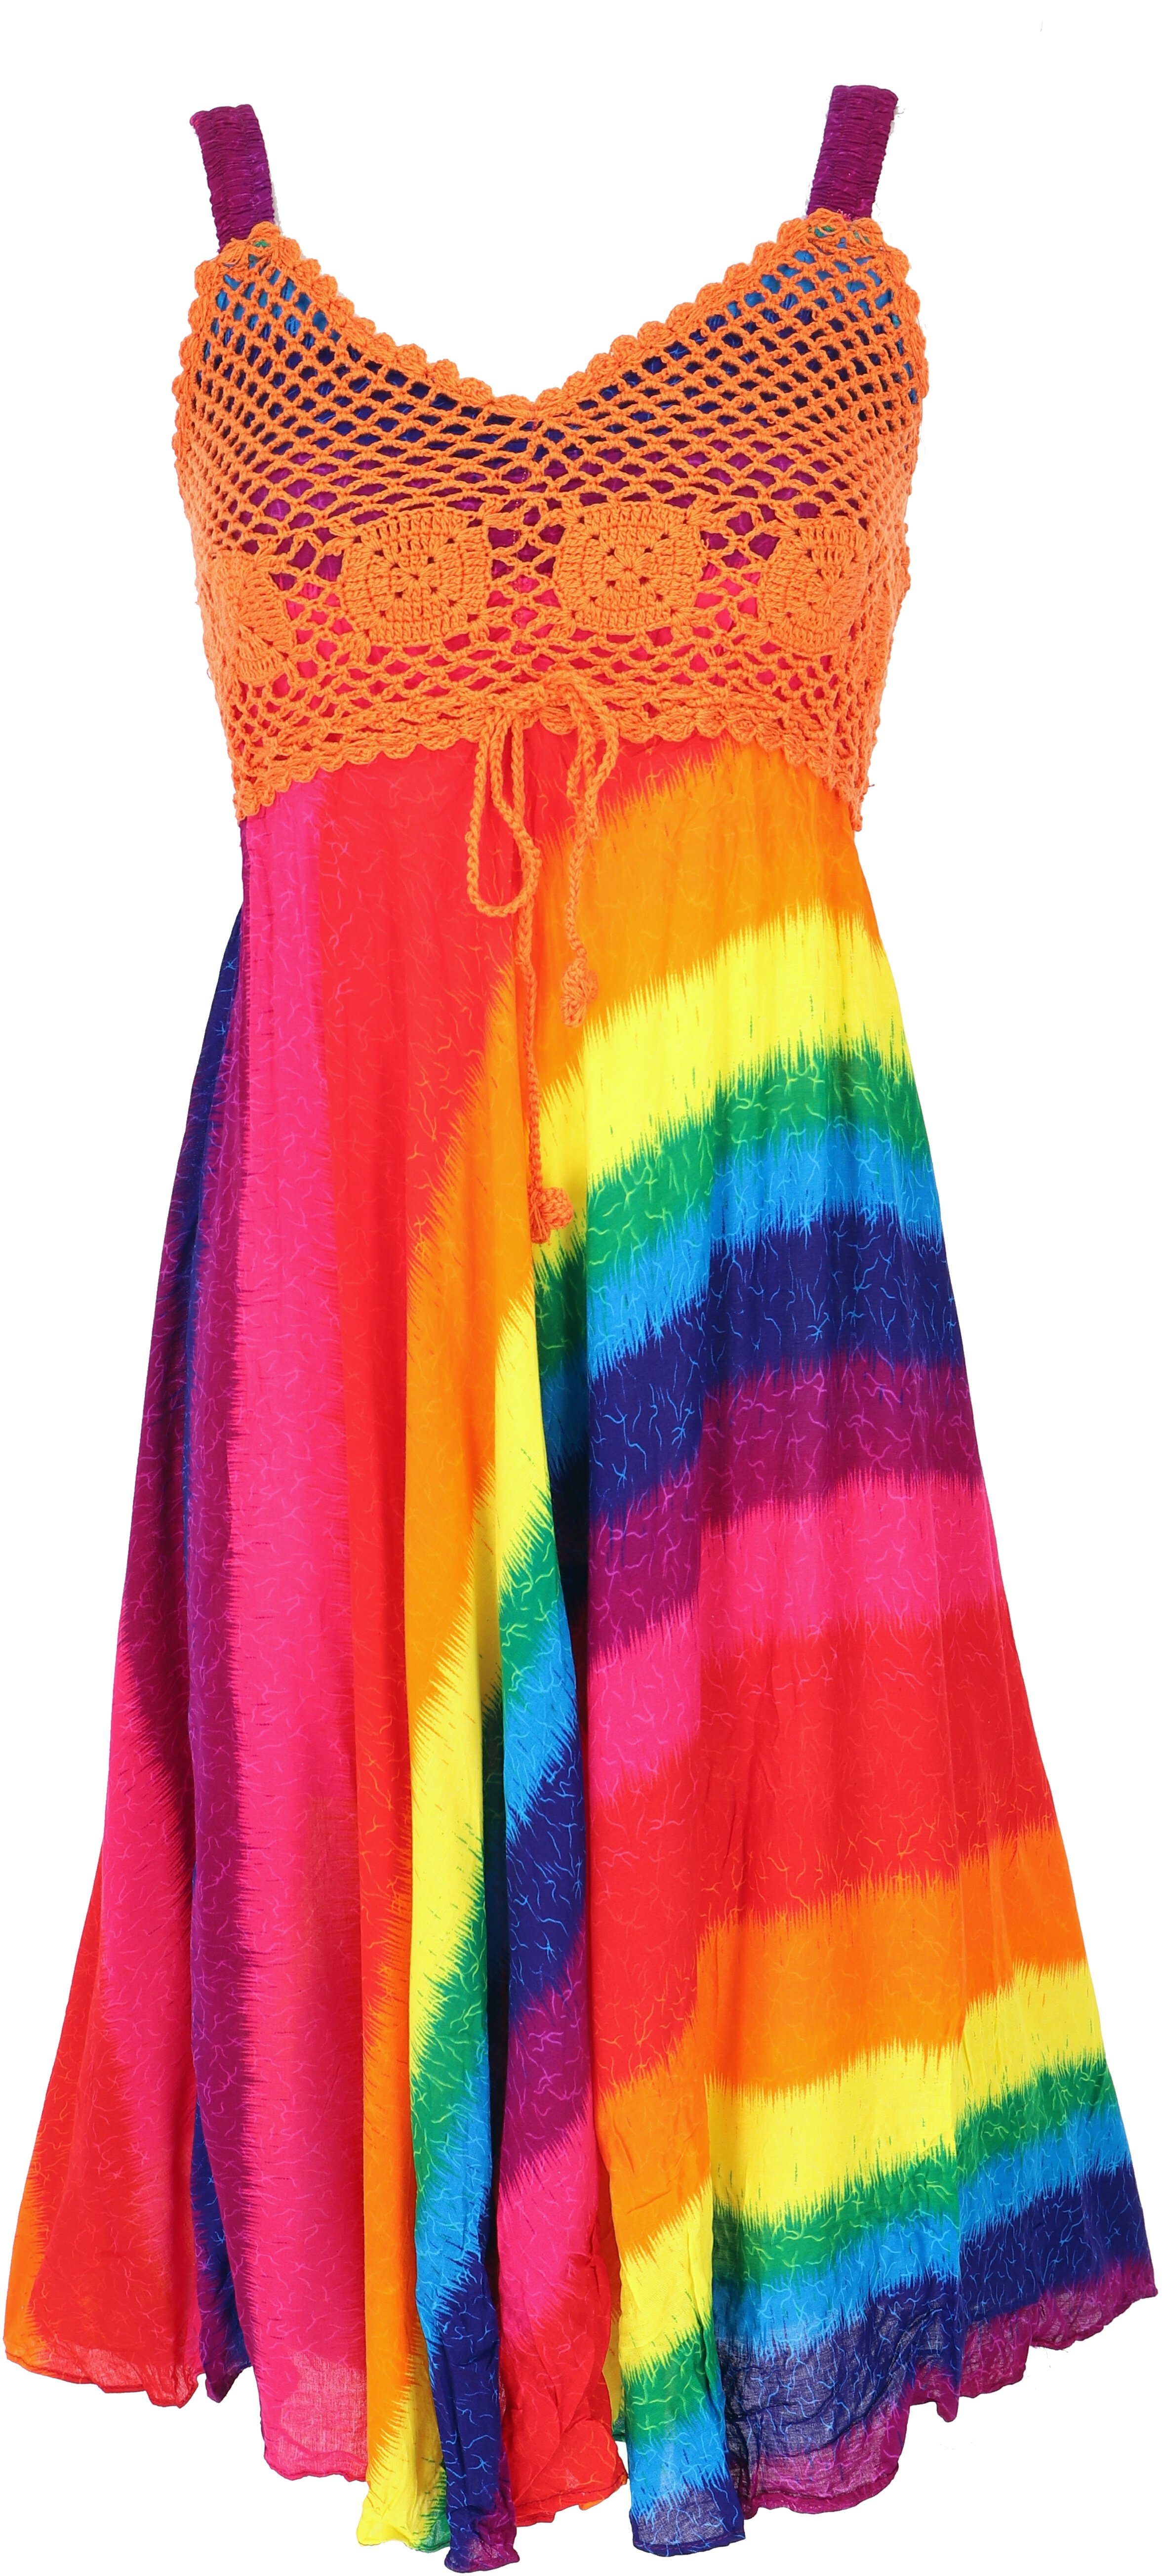 Guru-Shop Midikleid Boho Minikleid, Sommerkleid, alternative Krinkelkleid regenbogen/orange -.. Bekleidung